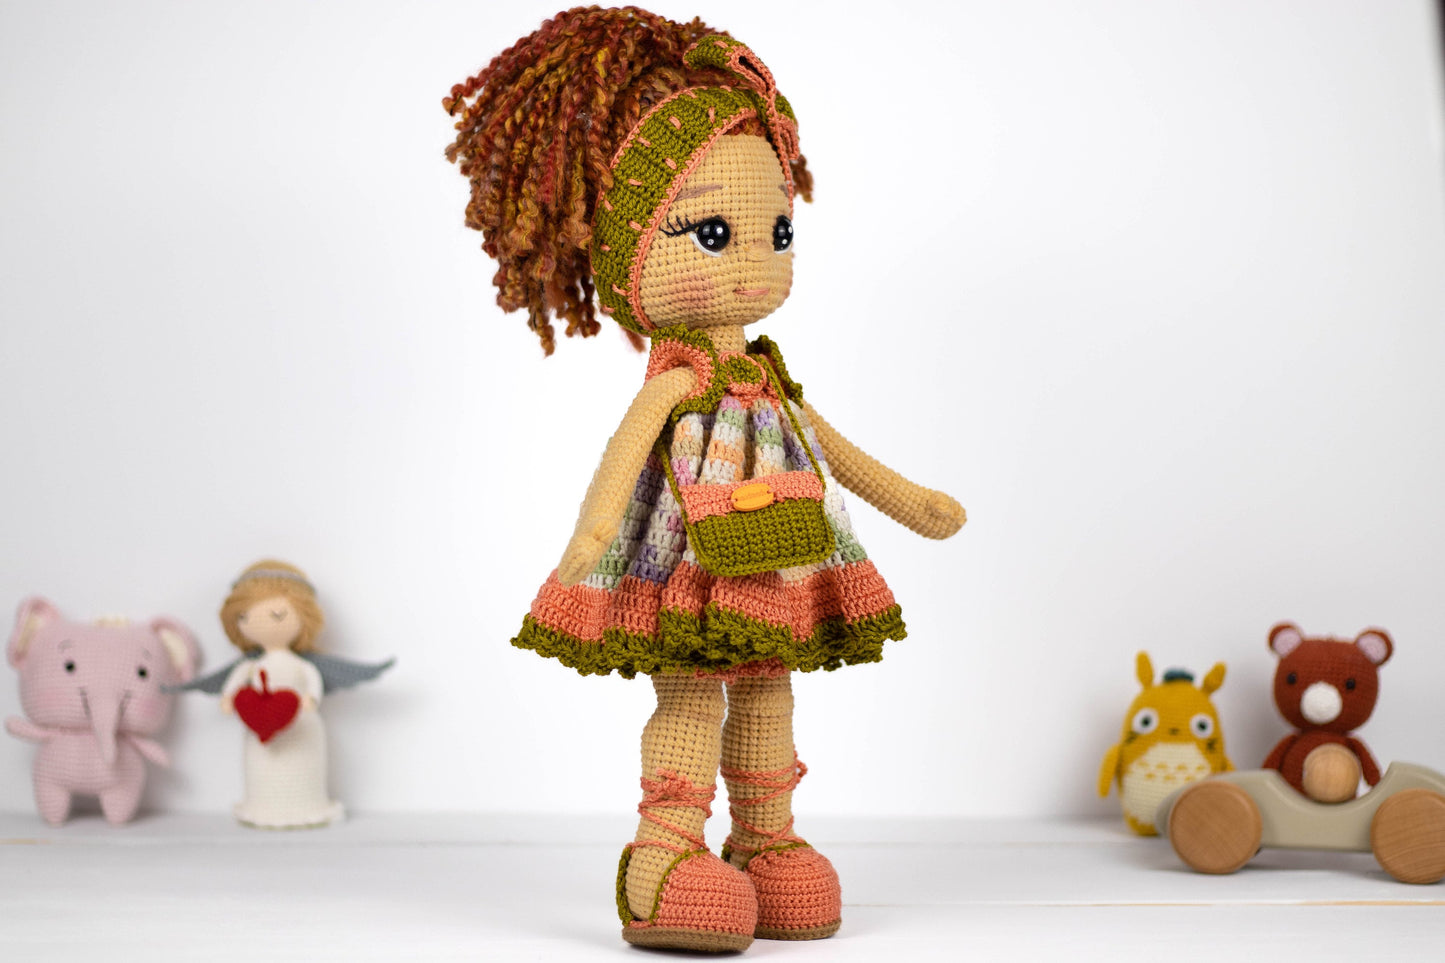 Crochet Doll Curly Hair Girl with Headband, Amigurumi Pretty Girl Doll, Plush Doll with Clutch, Knit Doll Toy, Handmade Stuffed Doll Gift